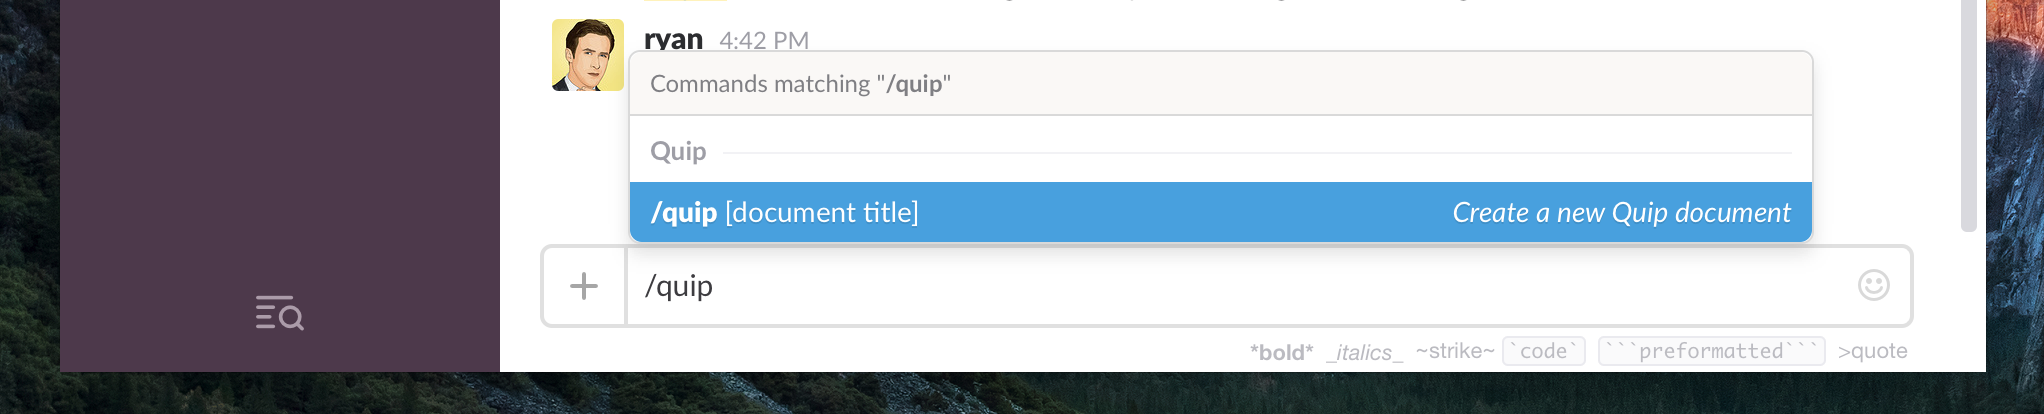 Create Quip Doc in Slack